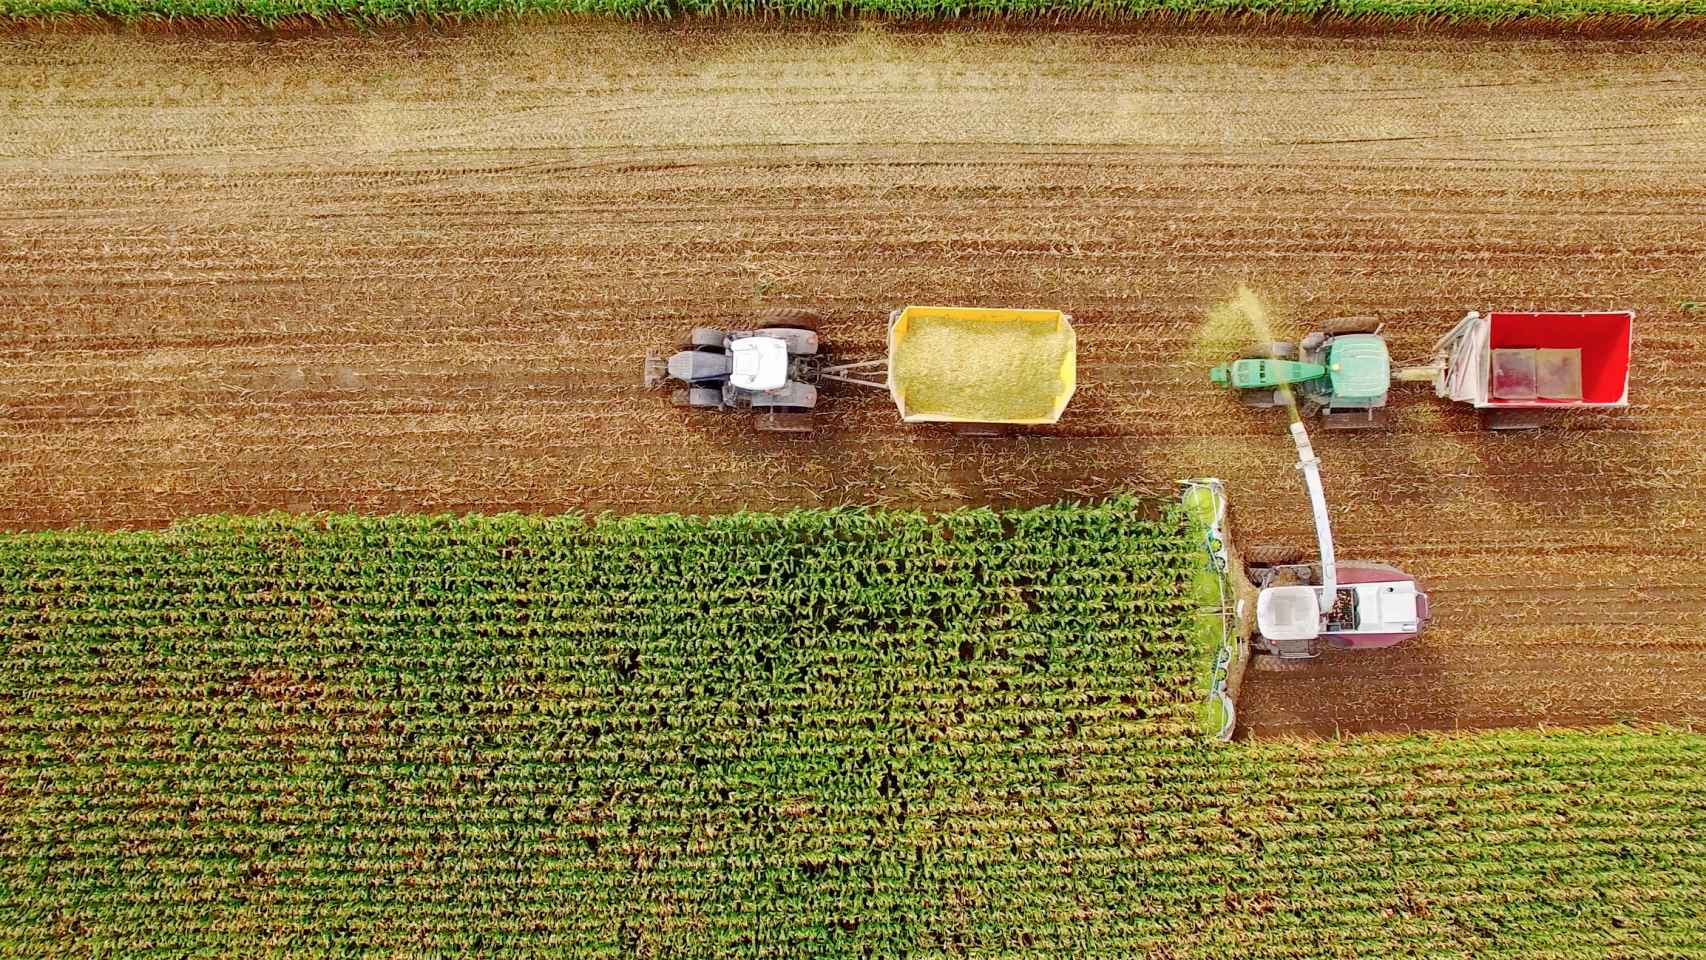 Vista aérea de una cosecha de maíz.